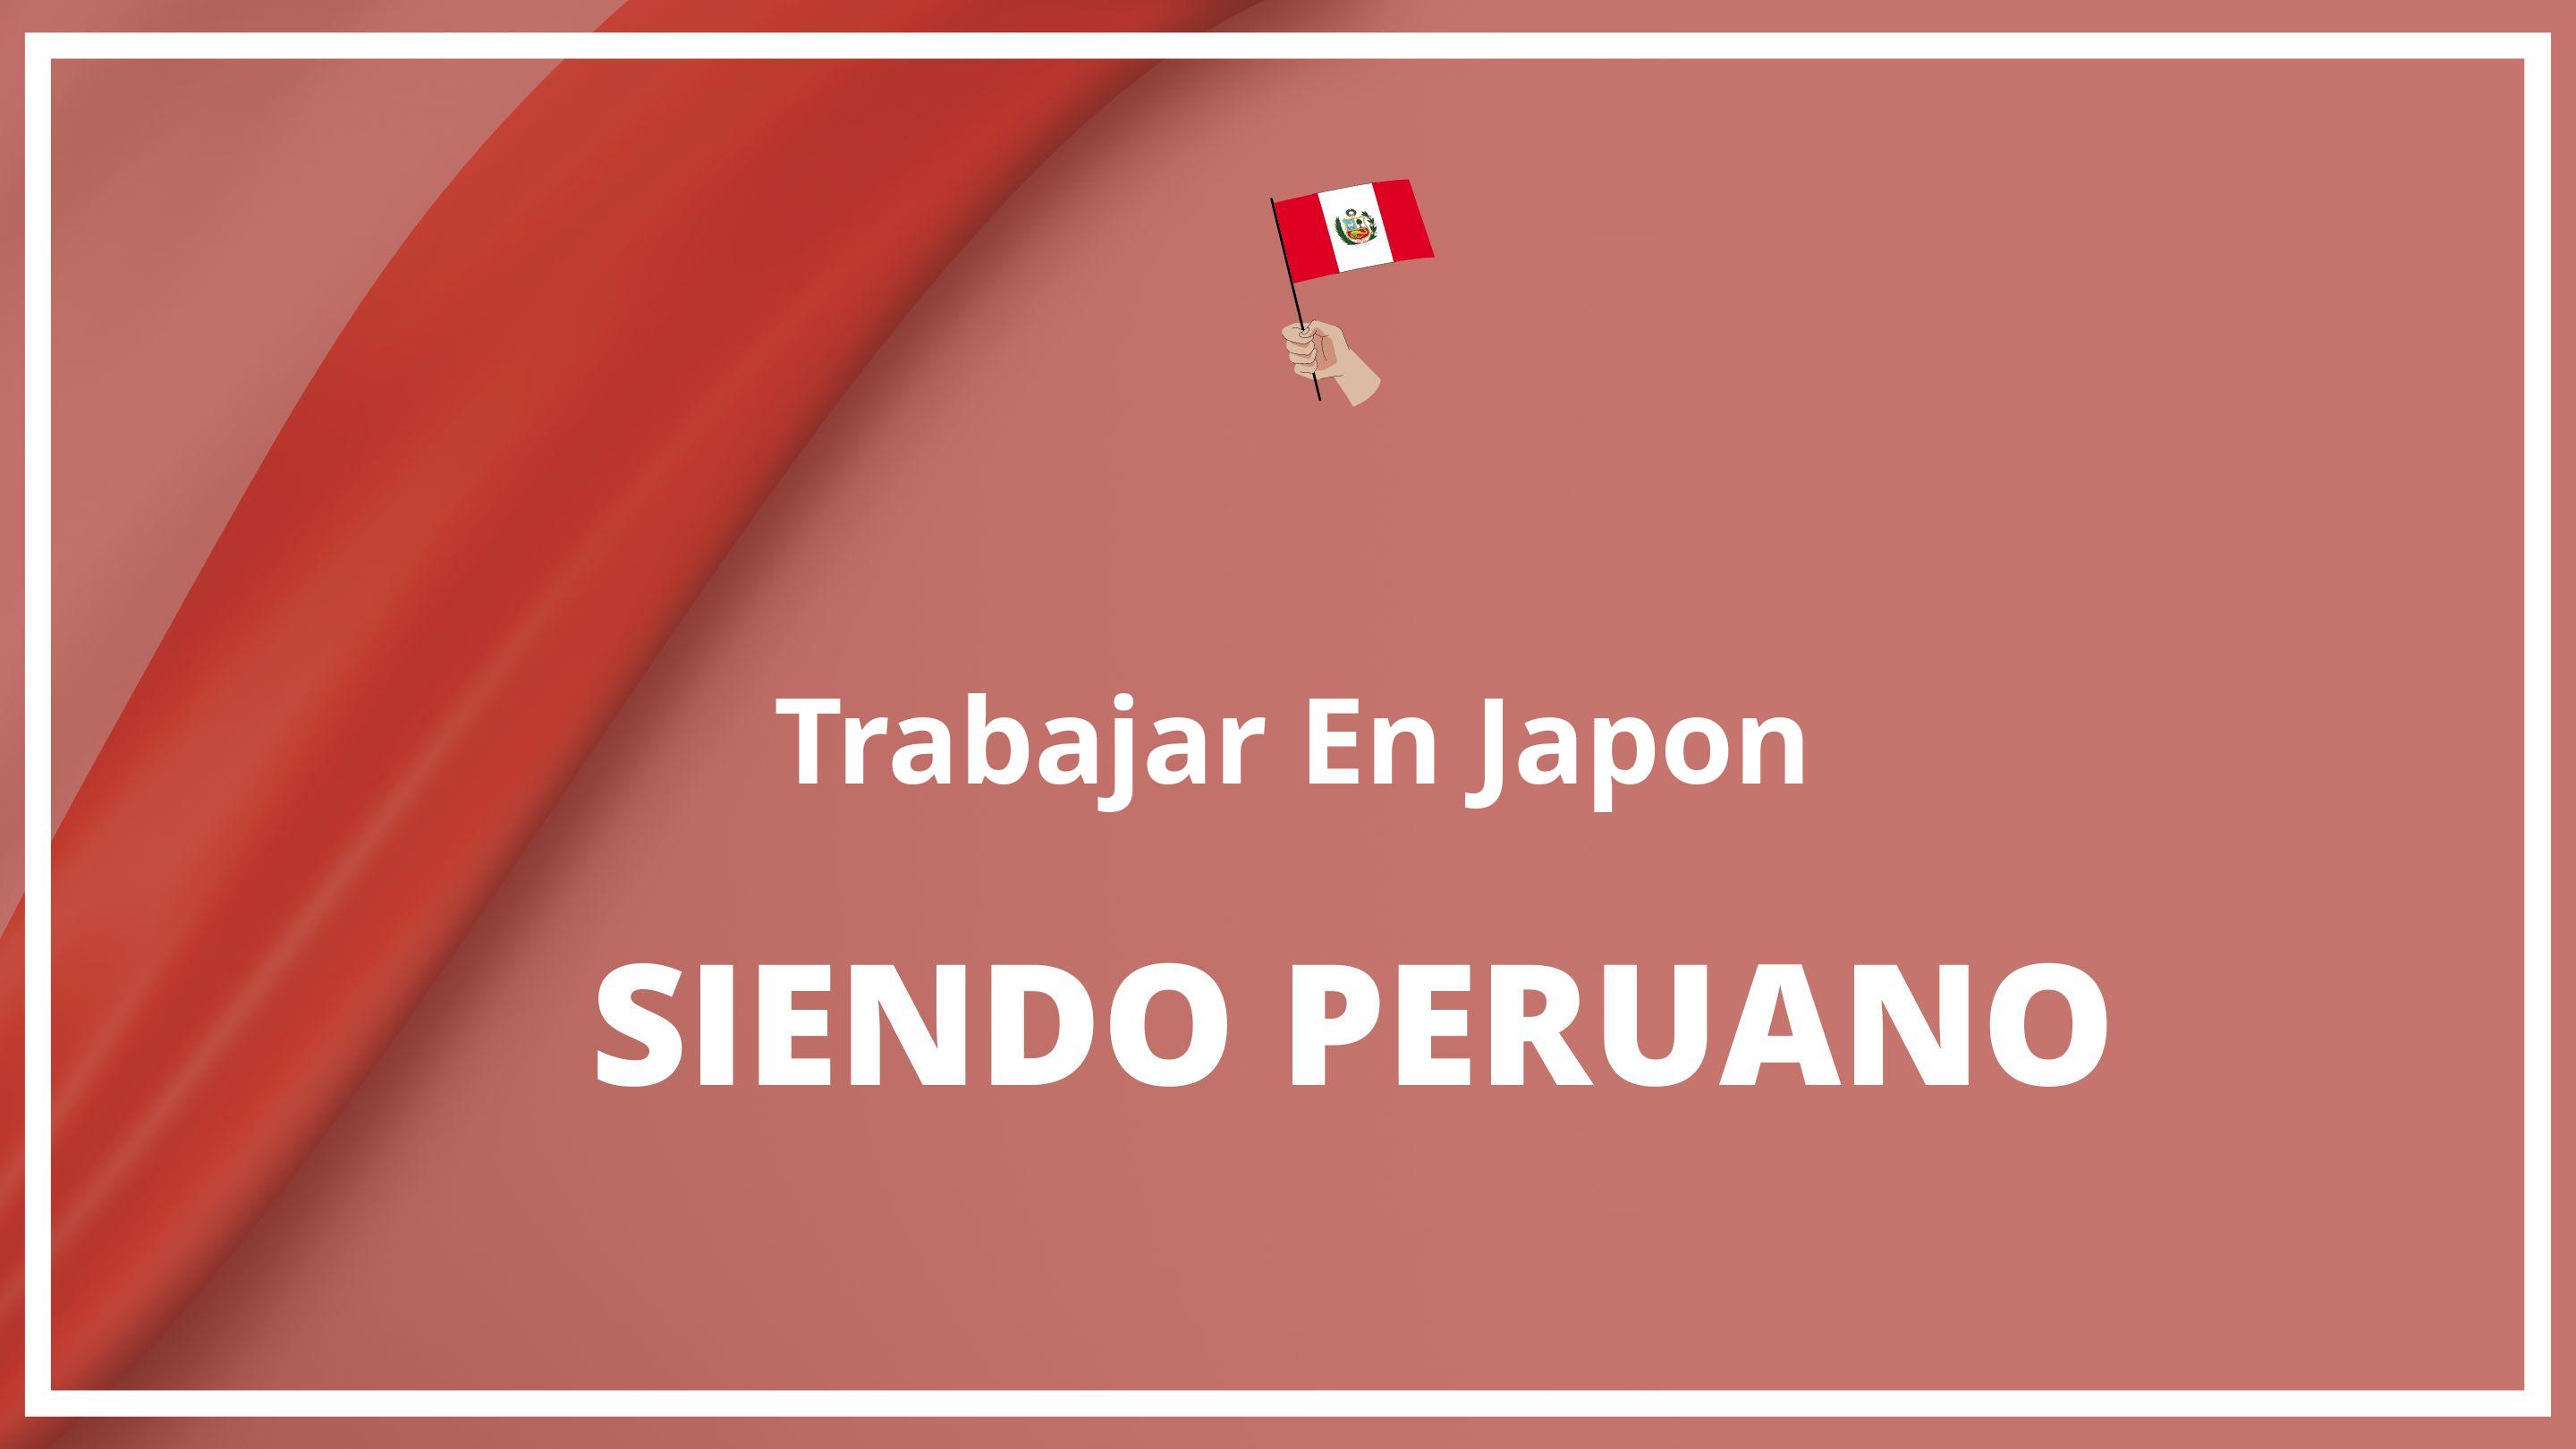 Como trabajar en japon siendo peruano